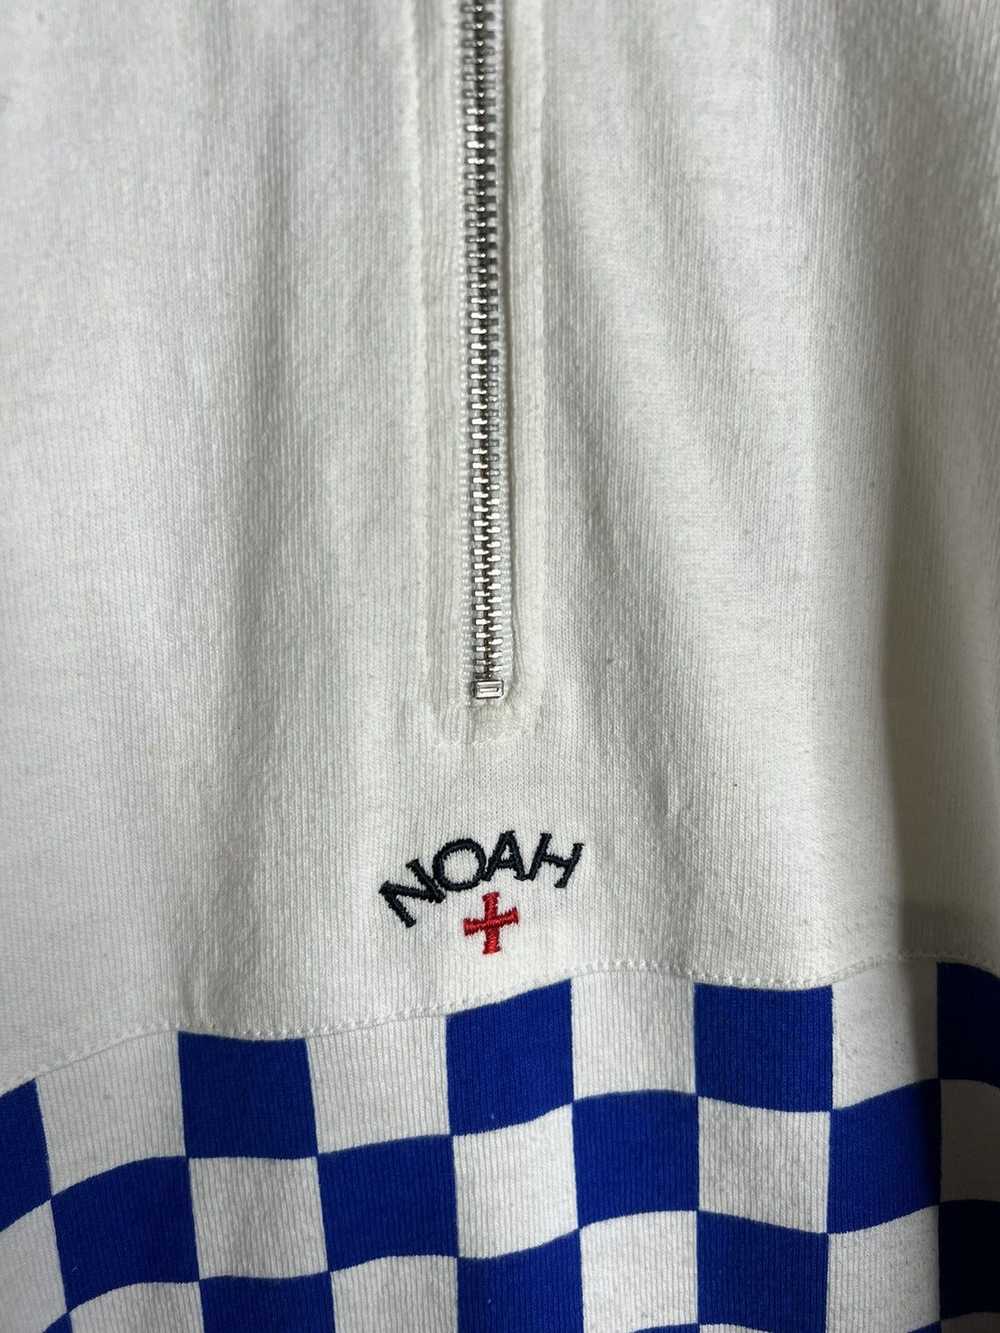 Noah Noah Long Sleeve Zip Polo Size Medium - image 2